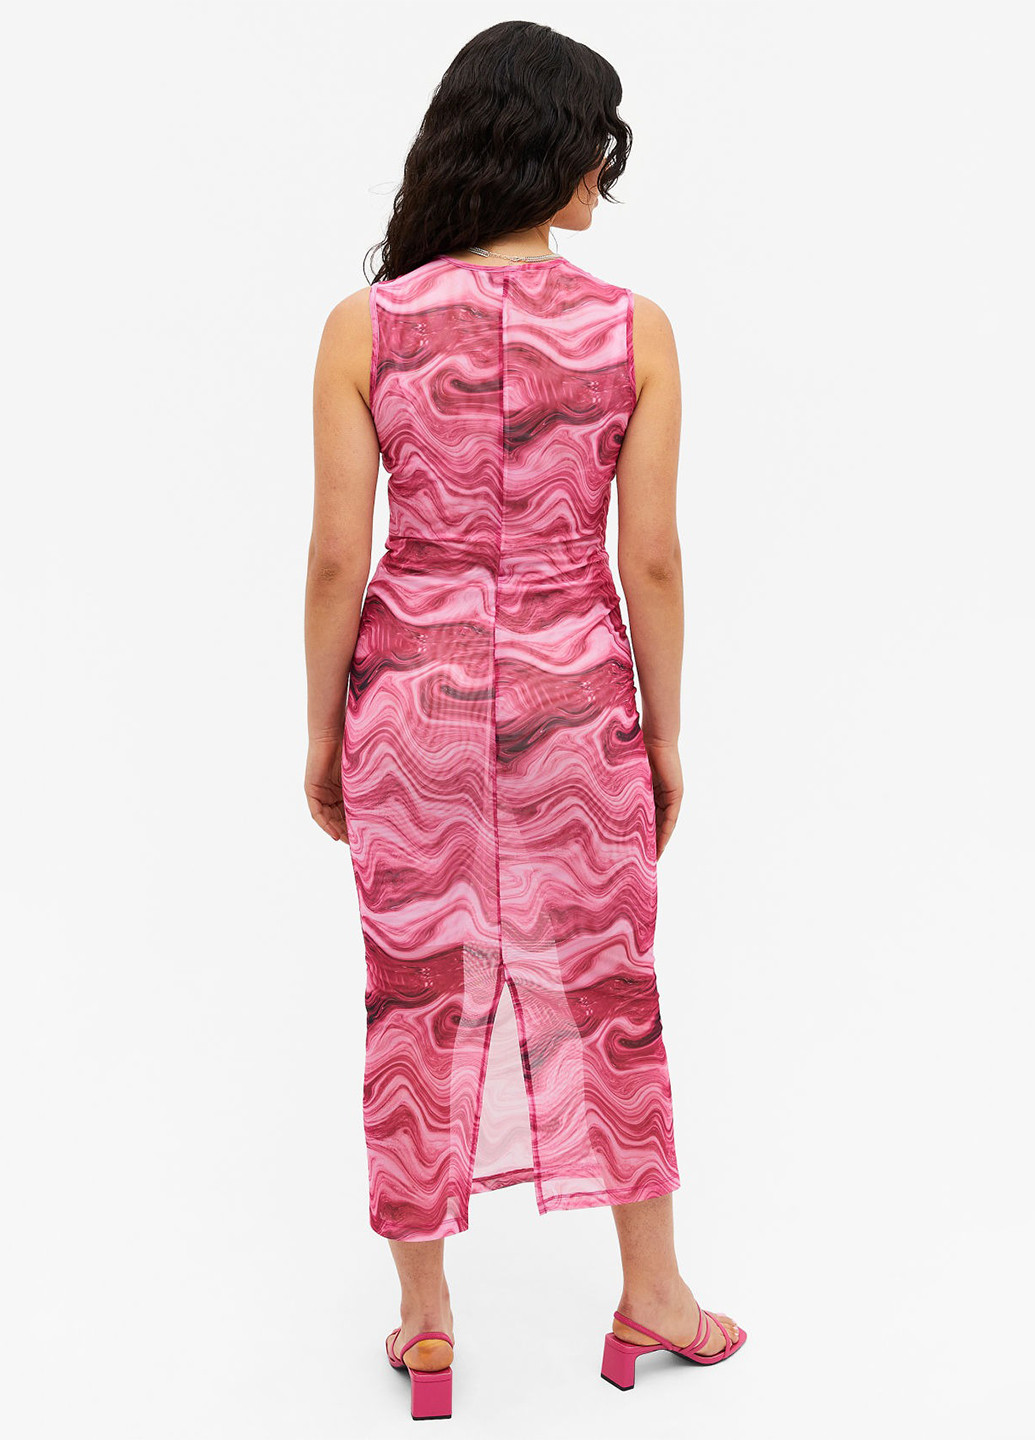 Розовое пляжное платье Monki с абстрактным узором